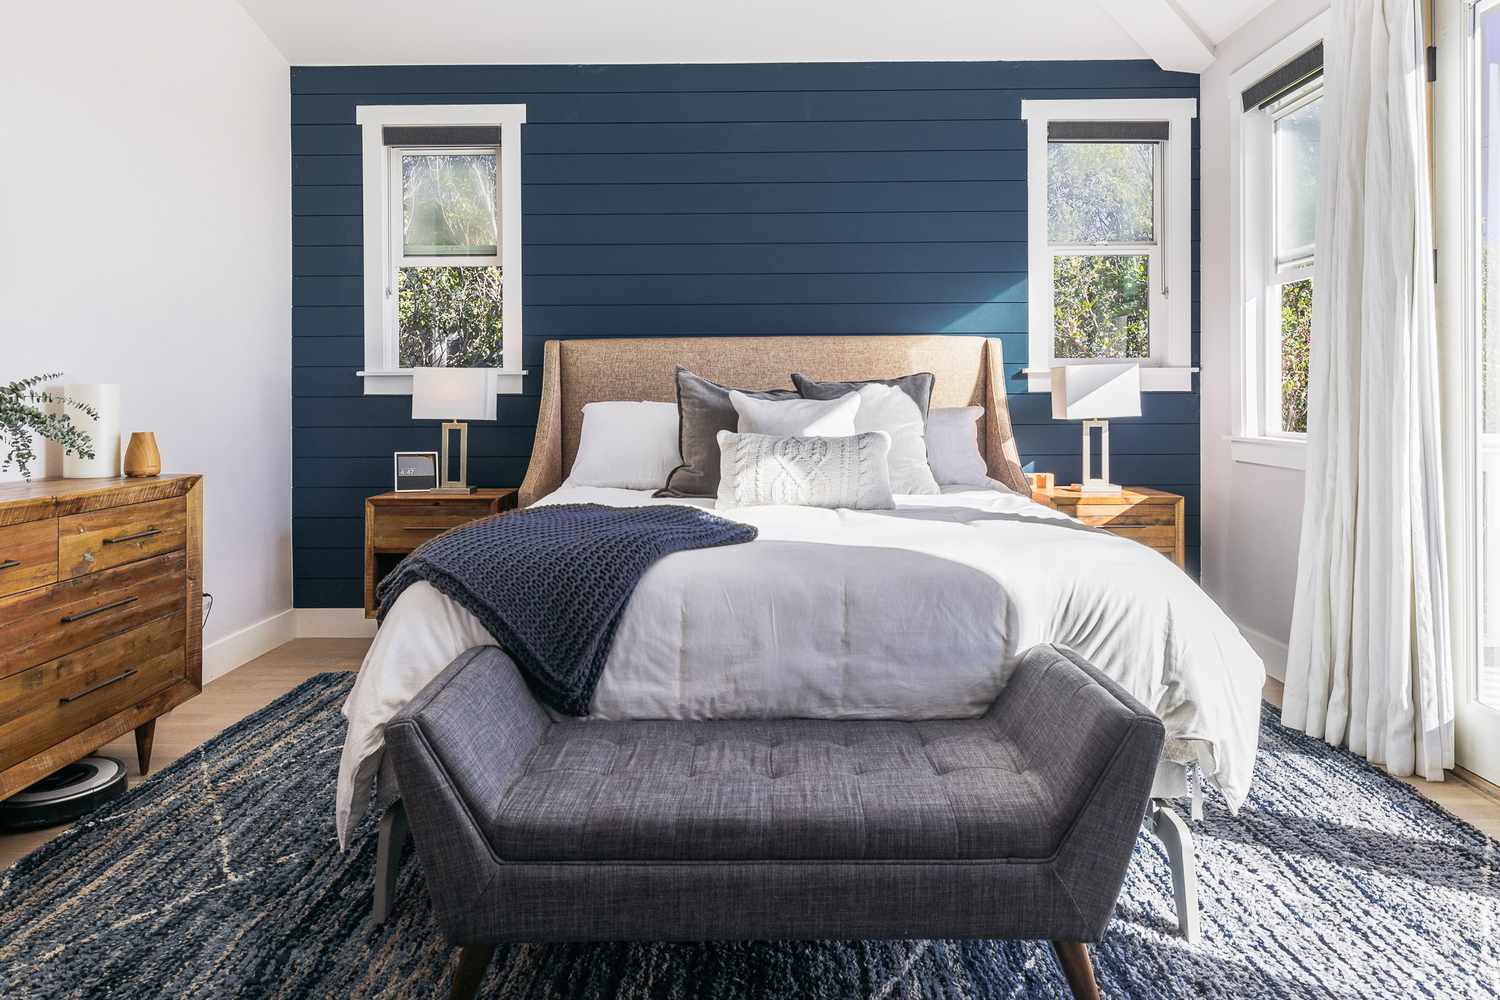 Quarto temperamental com paredes shiplap azuis, roupa de cama azul e cinza e banco cinza na frente